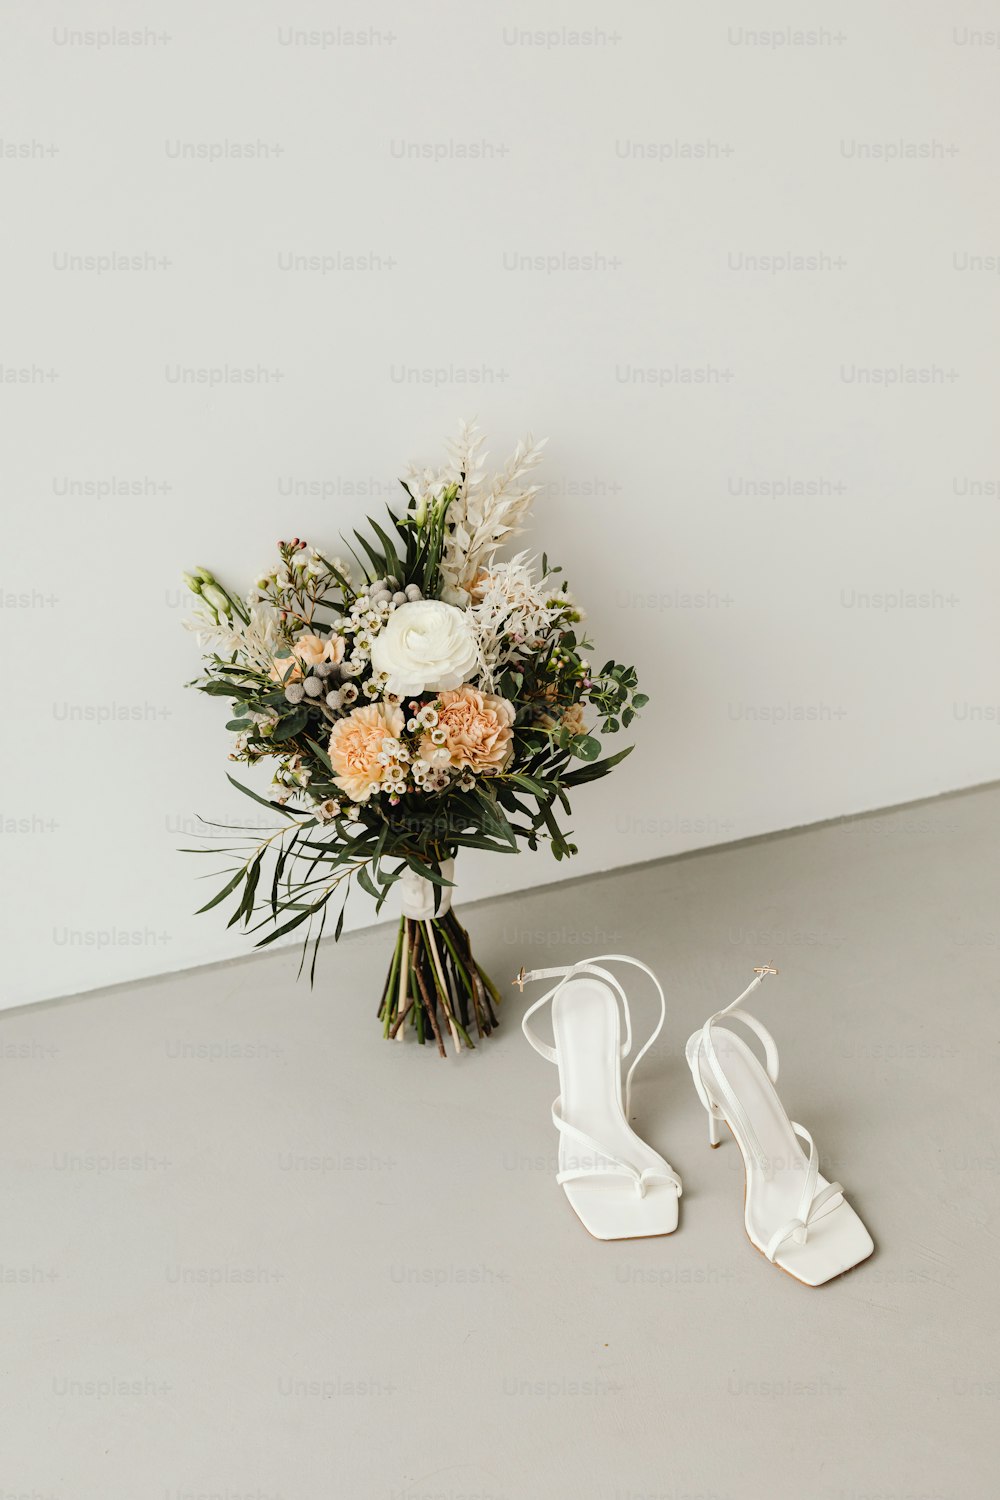 ein Blumenstrauß und ein Paar weiße Schuhe